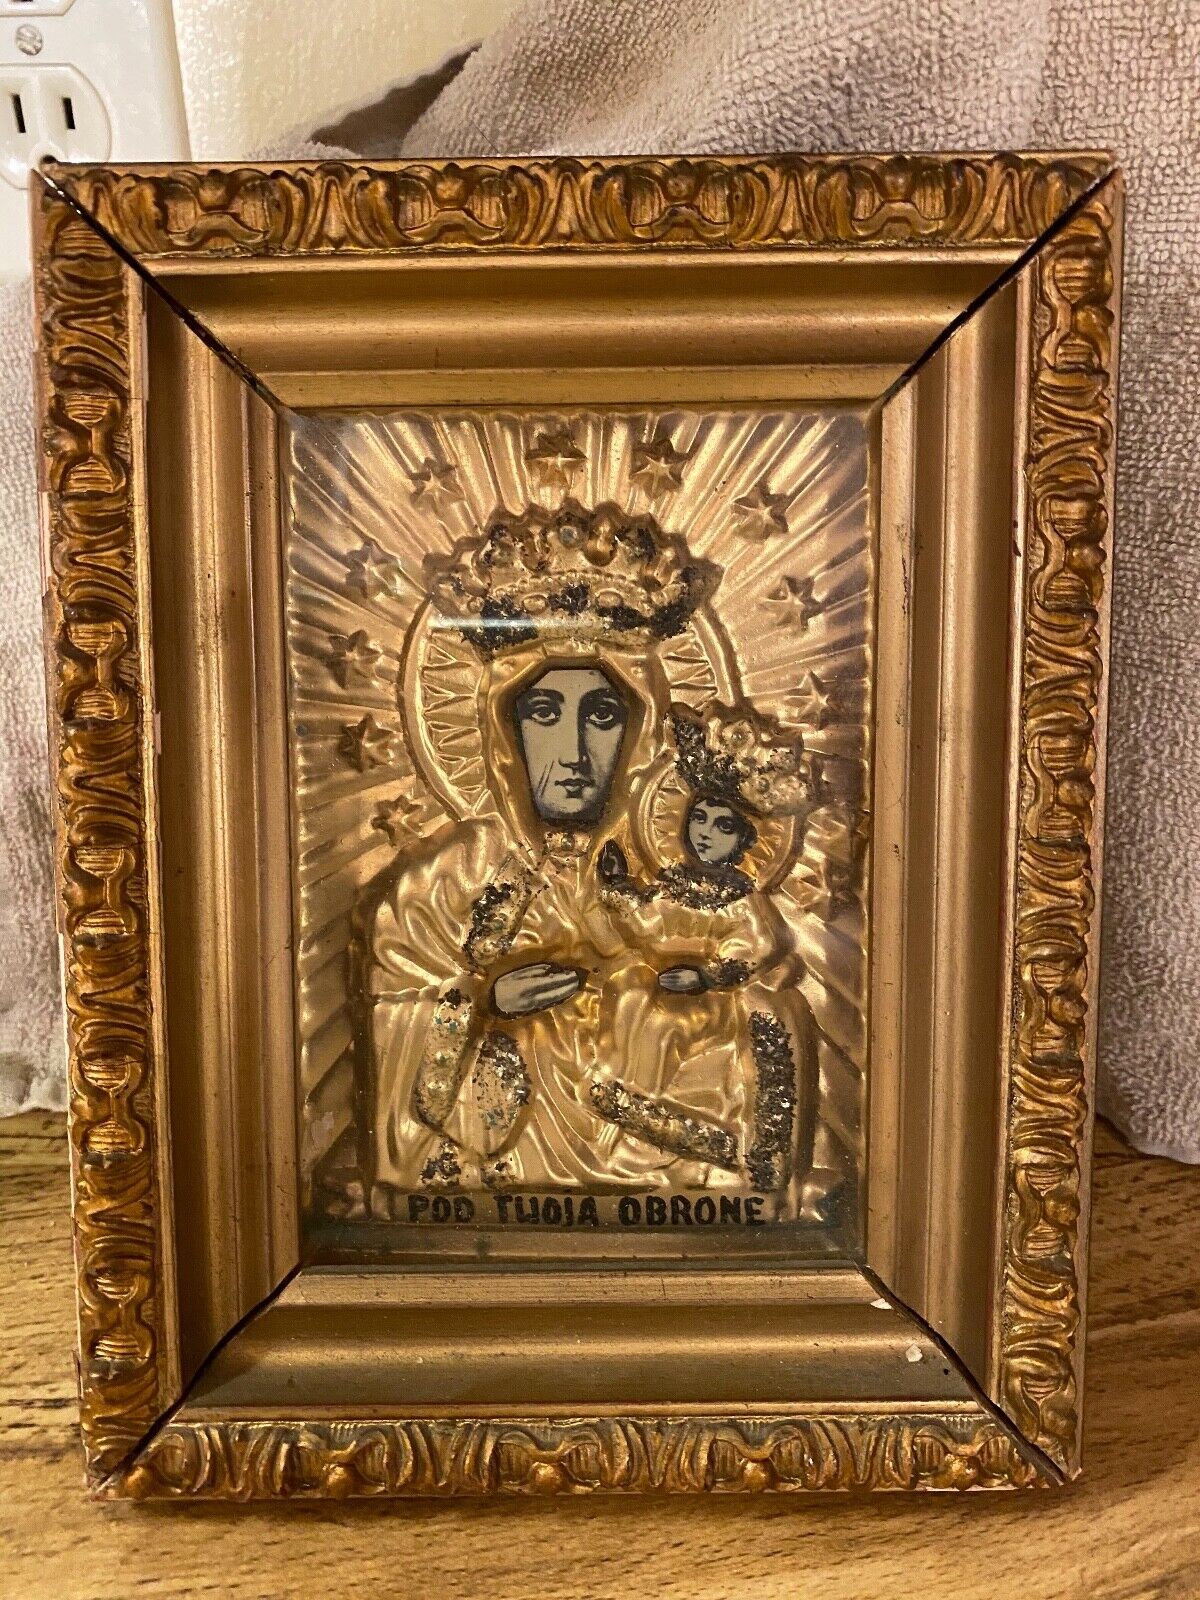 Polish Madonna Virgin Mary Jesus Jewel Crown Icon POD TWOJA OBRONE UCIEKAMY SIE